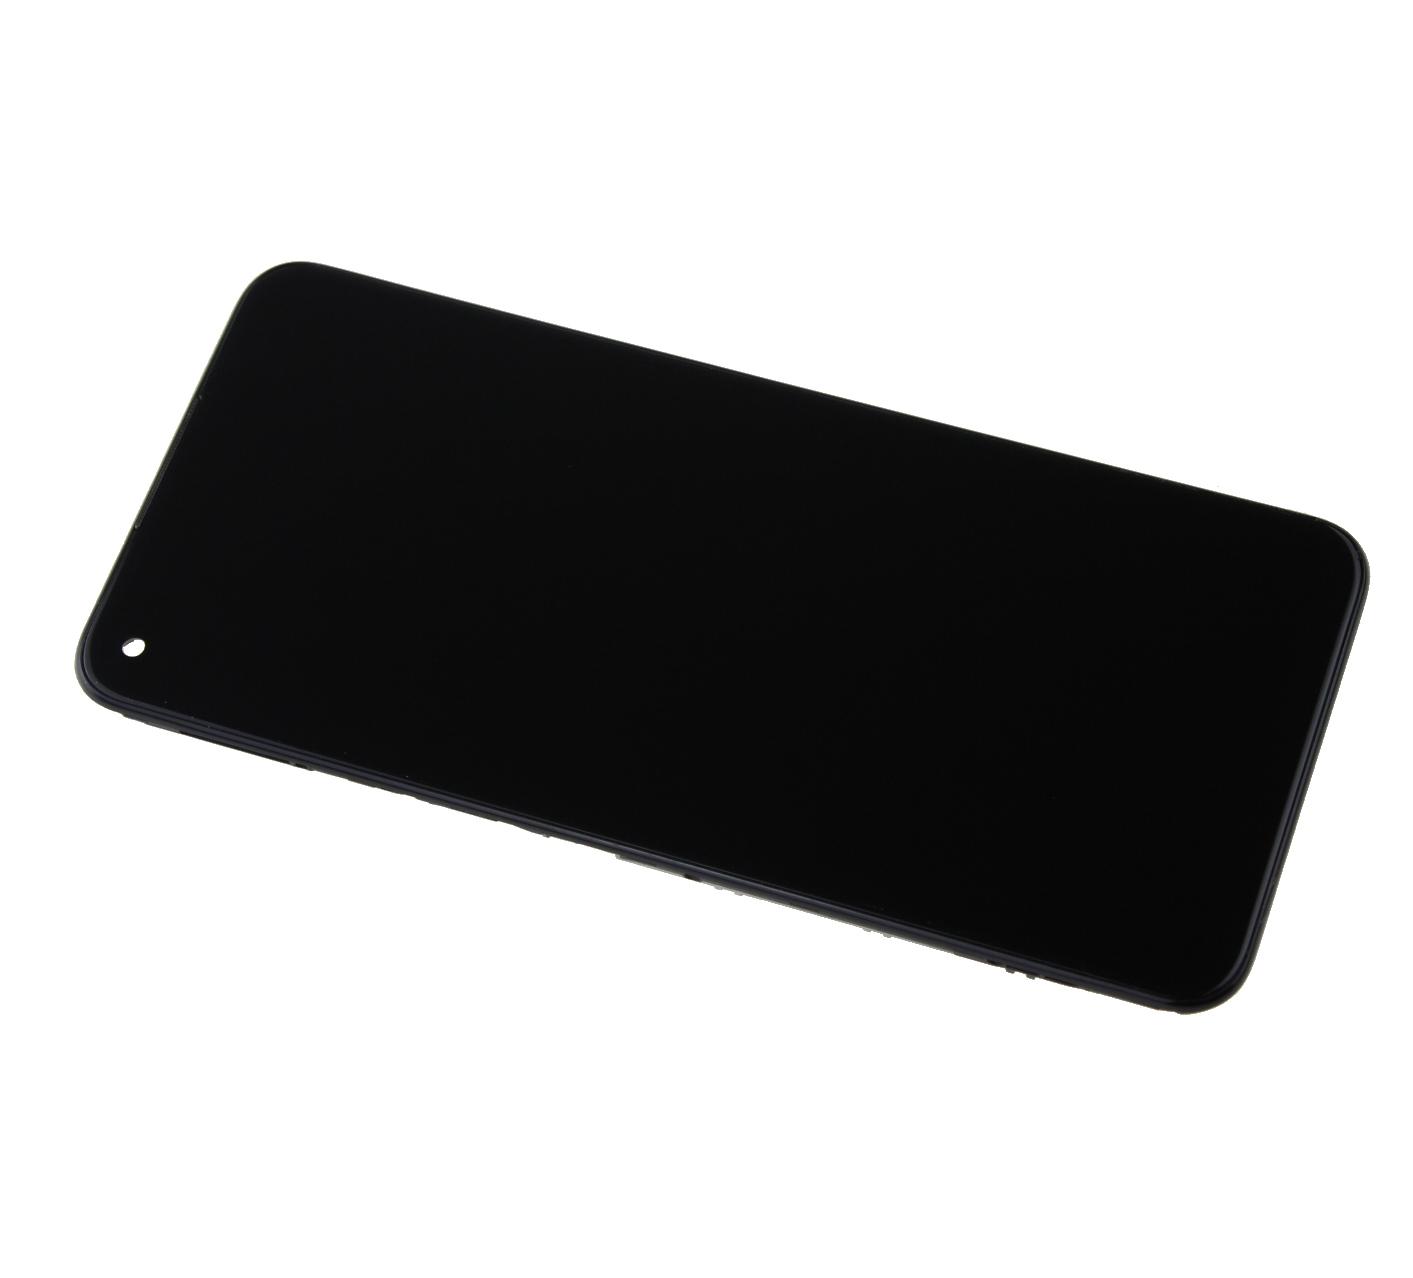 Originál LCD + Dotyková vrstva Oppo A53 5G RMX2111 černá - repasovaný díl vyměněné sklíčko